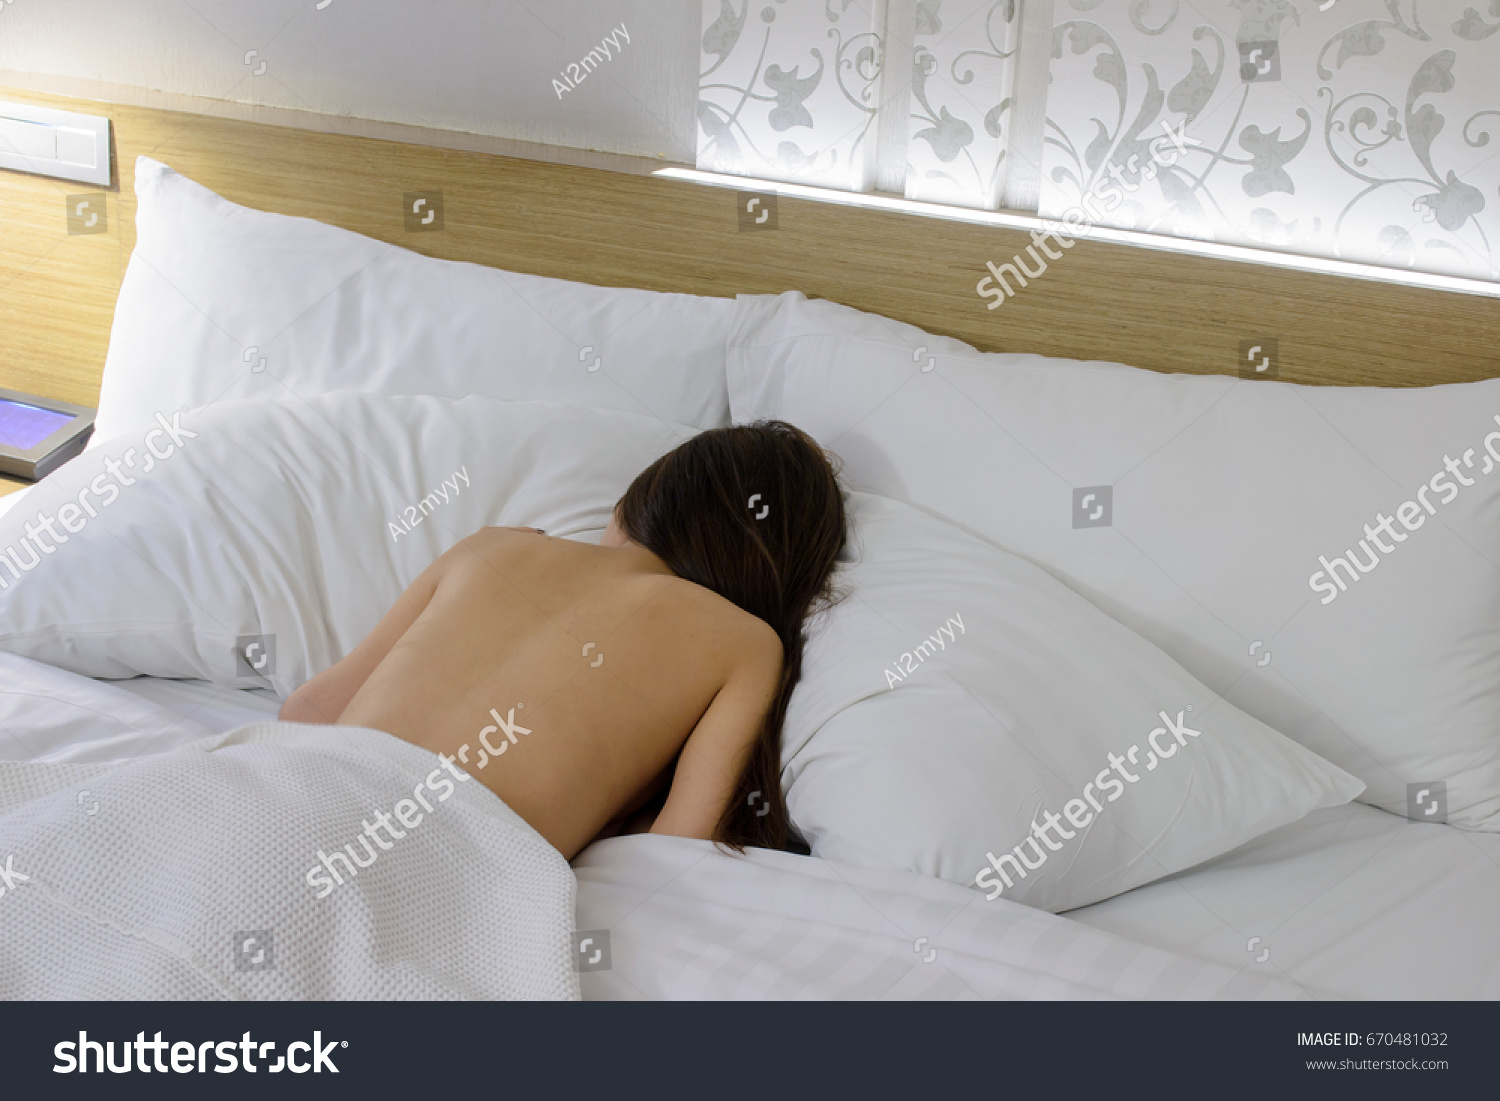 Naked Woman Sleep On White Pillow Stock